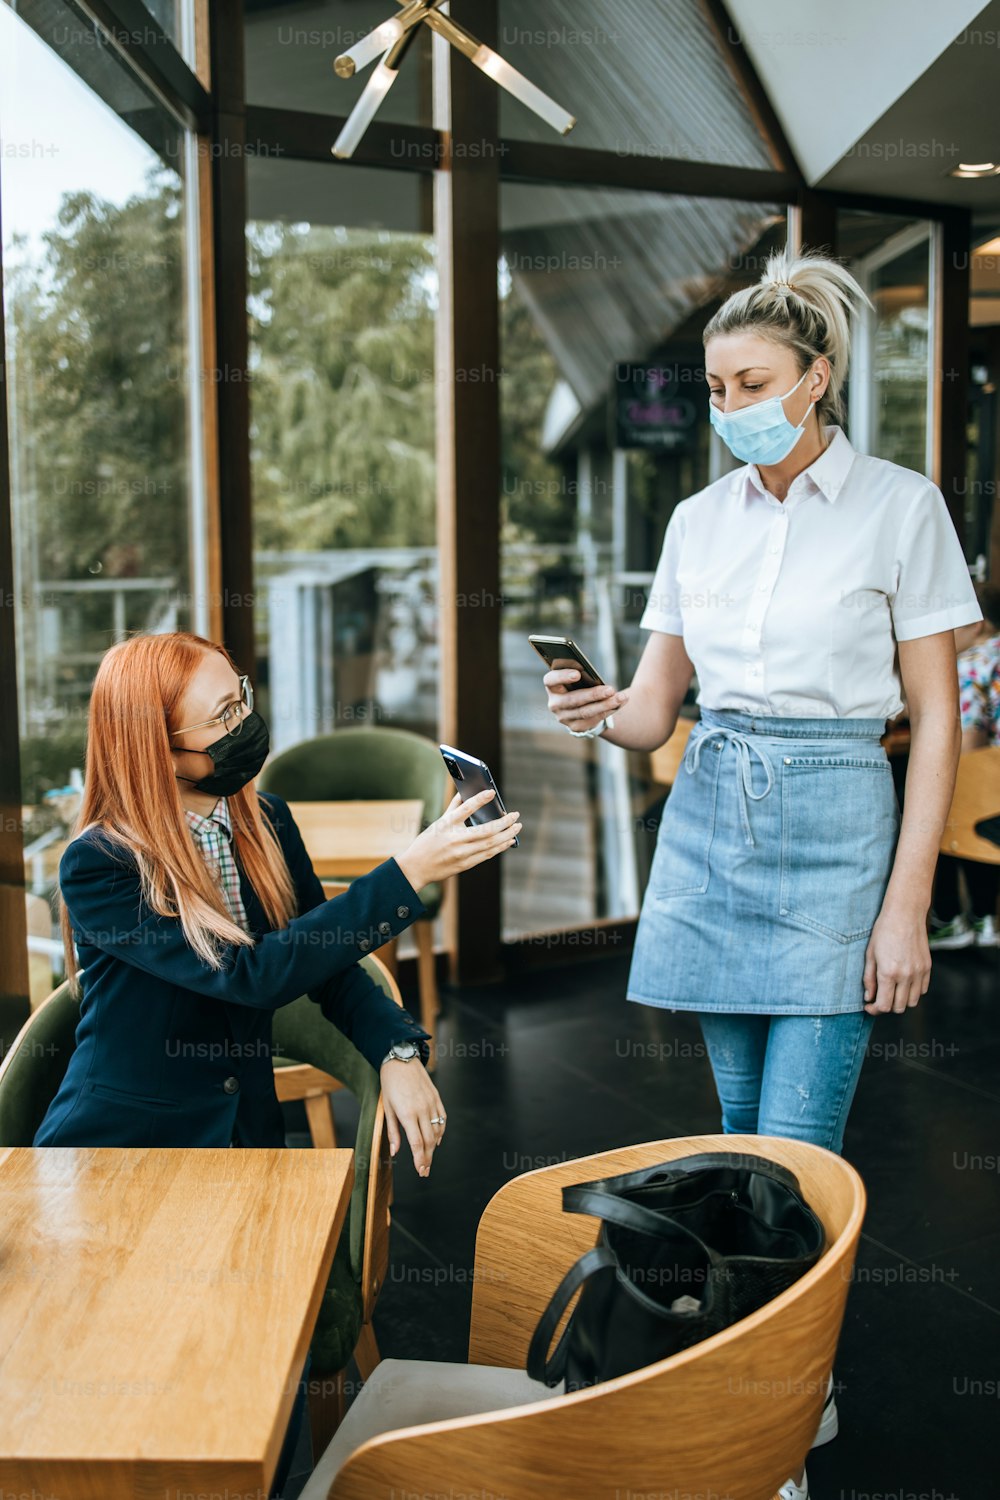 Joven y atractiva mujer de negocios sentada en un restaurante o cafetería y mostrando el certificado digital del pase de inmunización Covid-19 al guardia de seguridad. Concepto de pandemia y medidas de seguridad globales.